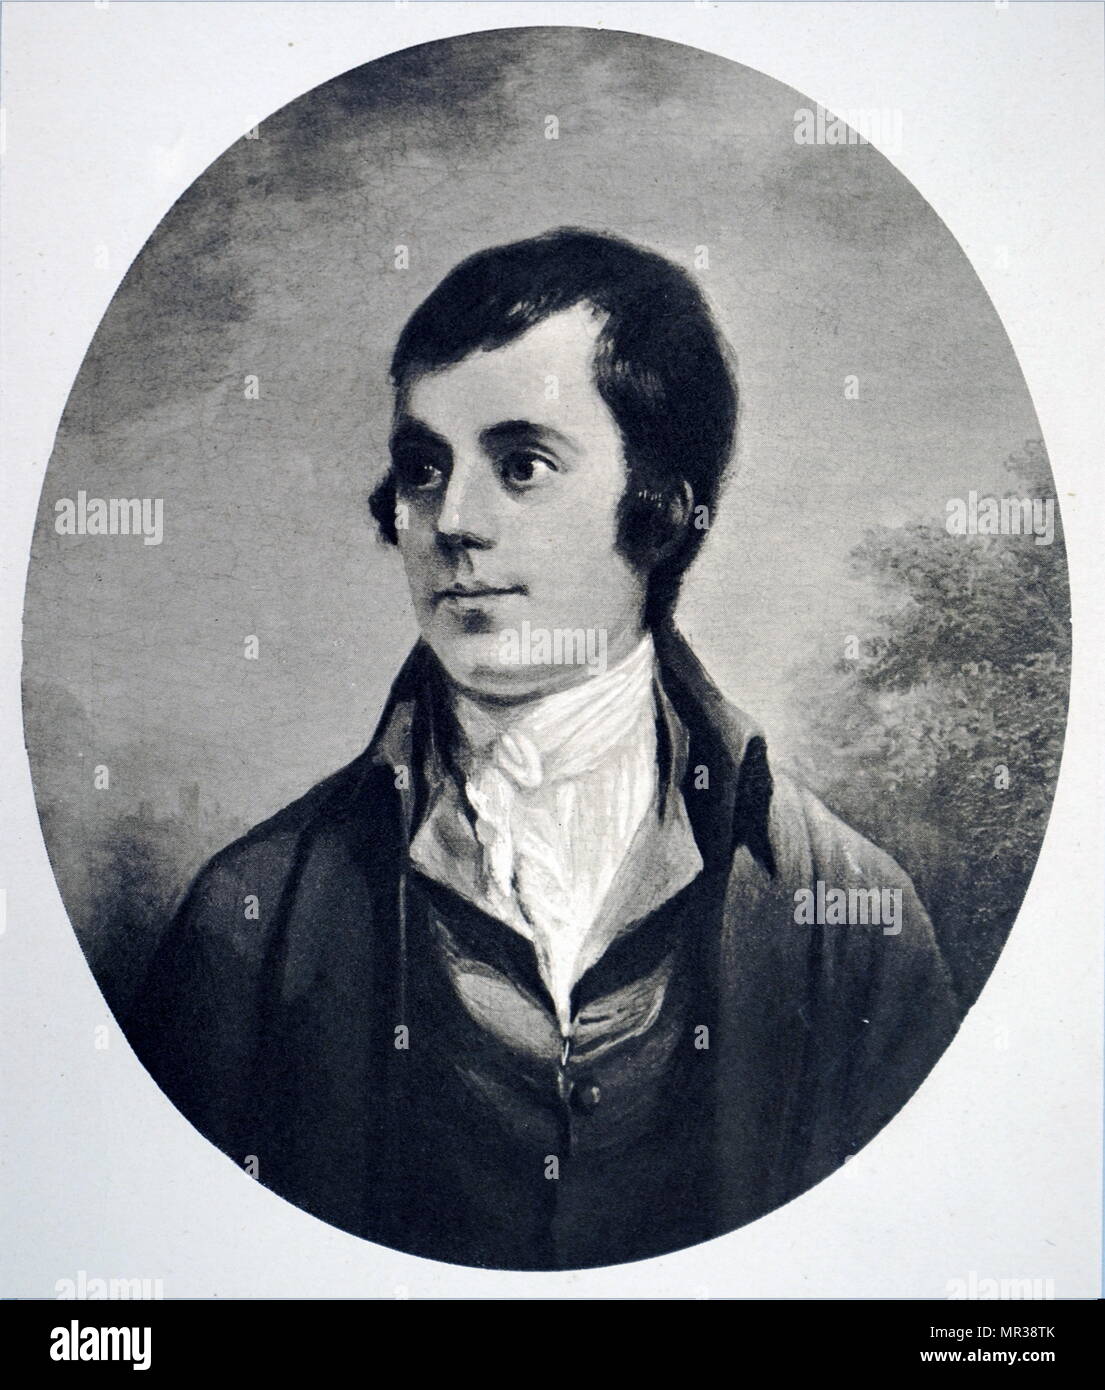 Porträt von Robert Burns (1759-1796) eine schottische Dichter und Lyriker. Vom 18. Jahrhundert Stockfoto